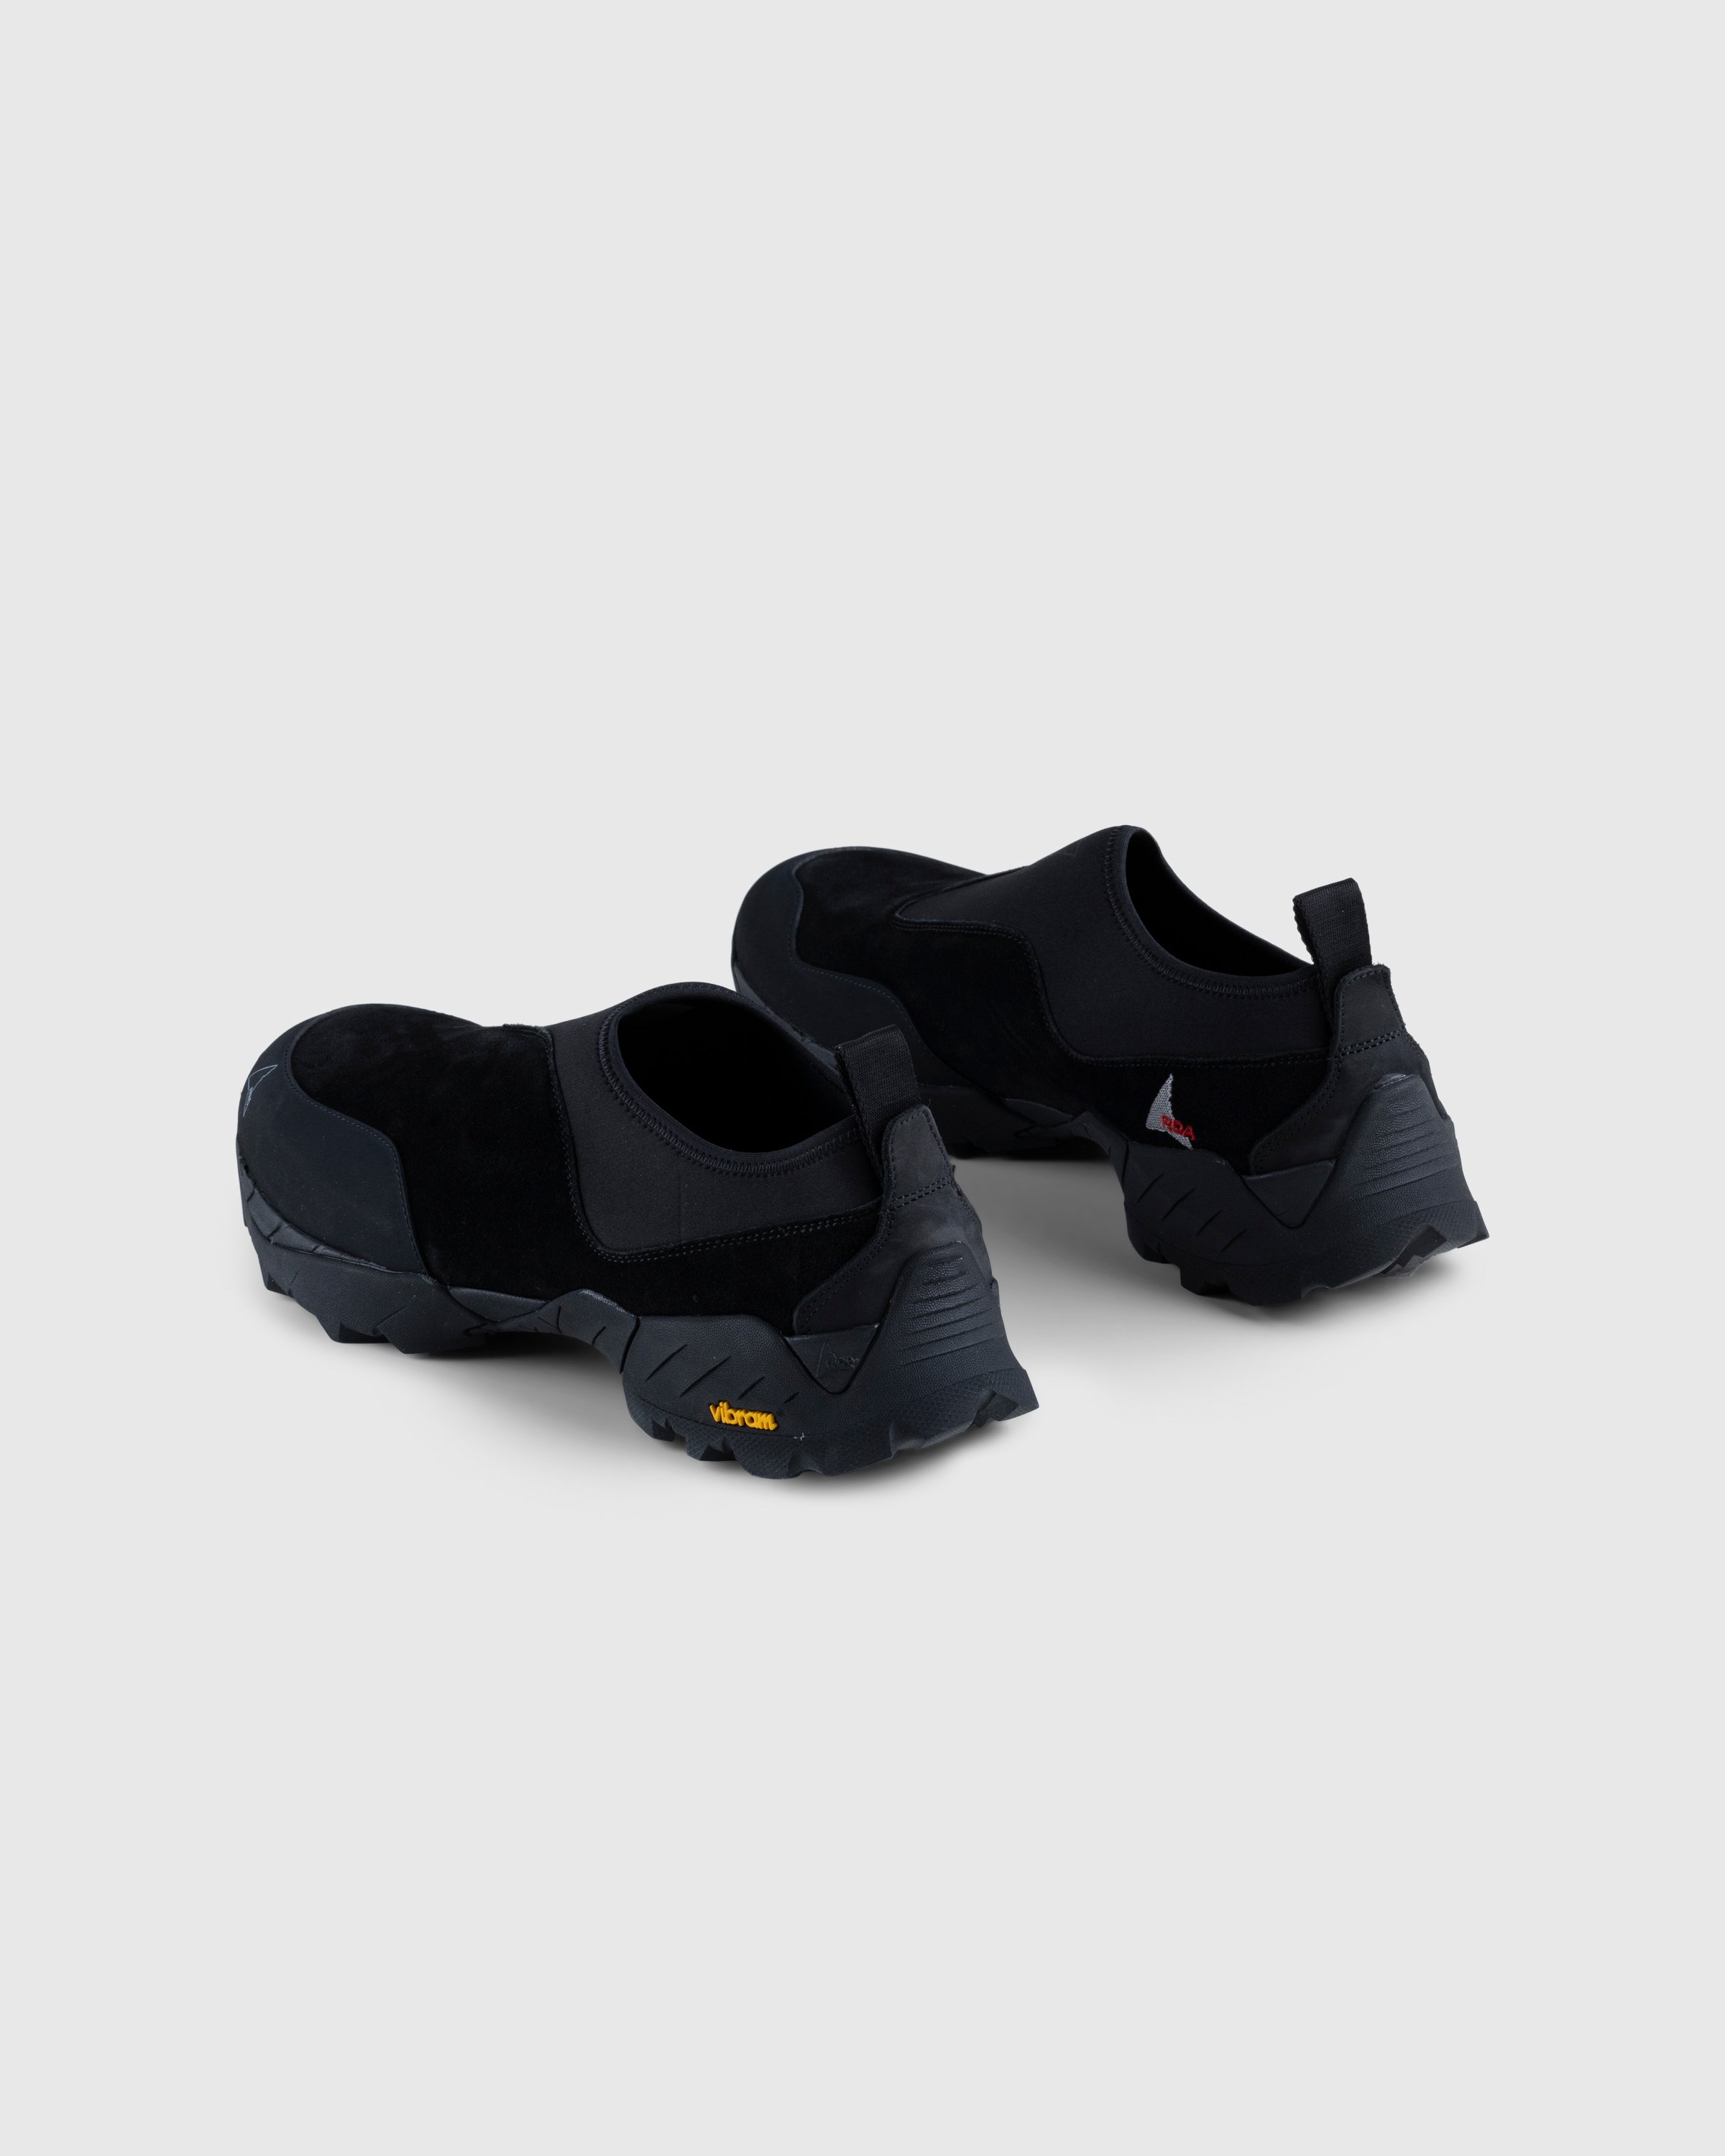 ROA - Slip On Sneaker Black - Footwear - Black - Image 4